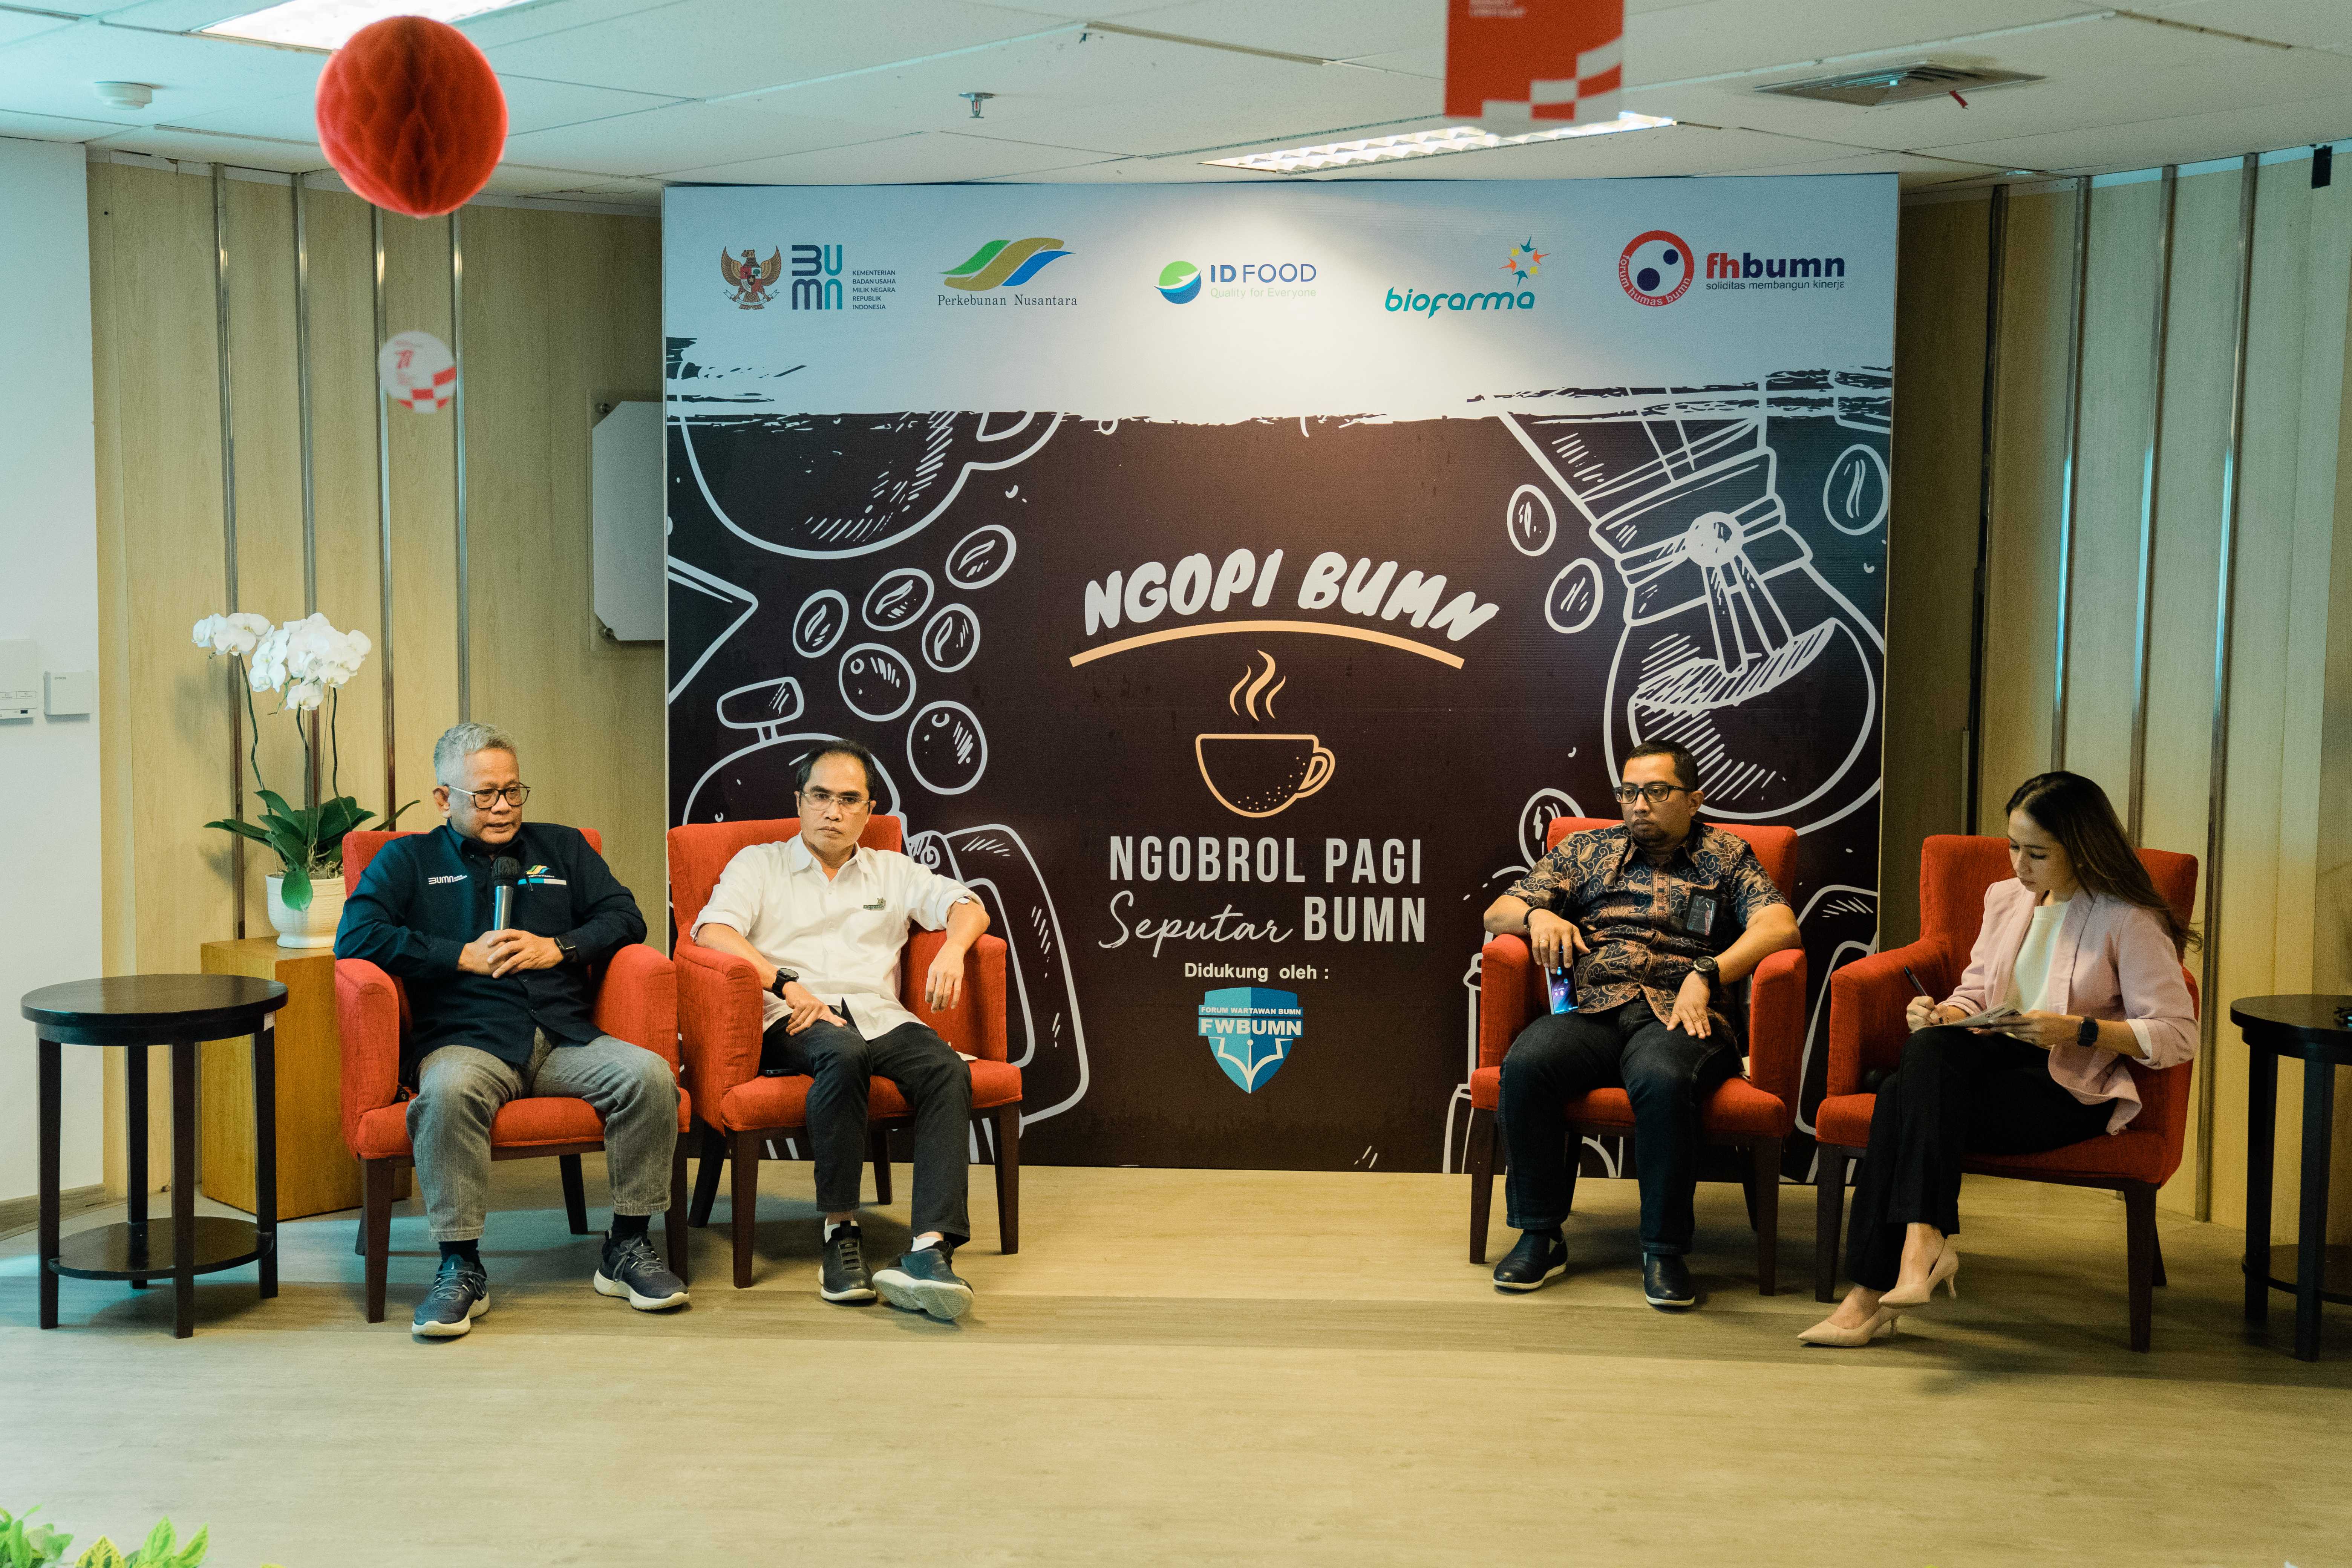 Kementerian Badan Usaha Milik Negara menyelenggarakan NGOPI BUMN “Ngobrol Pagi 𝓢𝒆𝓹𝓾𝓽𝓪𝓻 BUMN” dengan Tema "Sumbangsih BUMN Kepada Masyarakat Indonesia" bersama rekan-rekan media di Jakarta